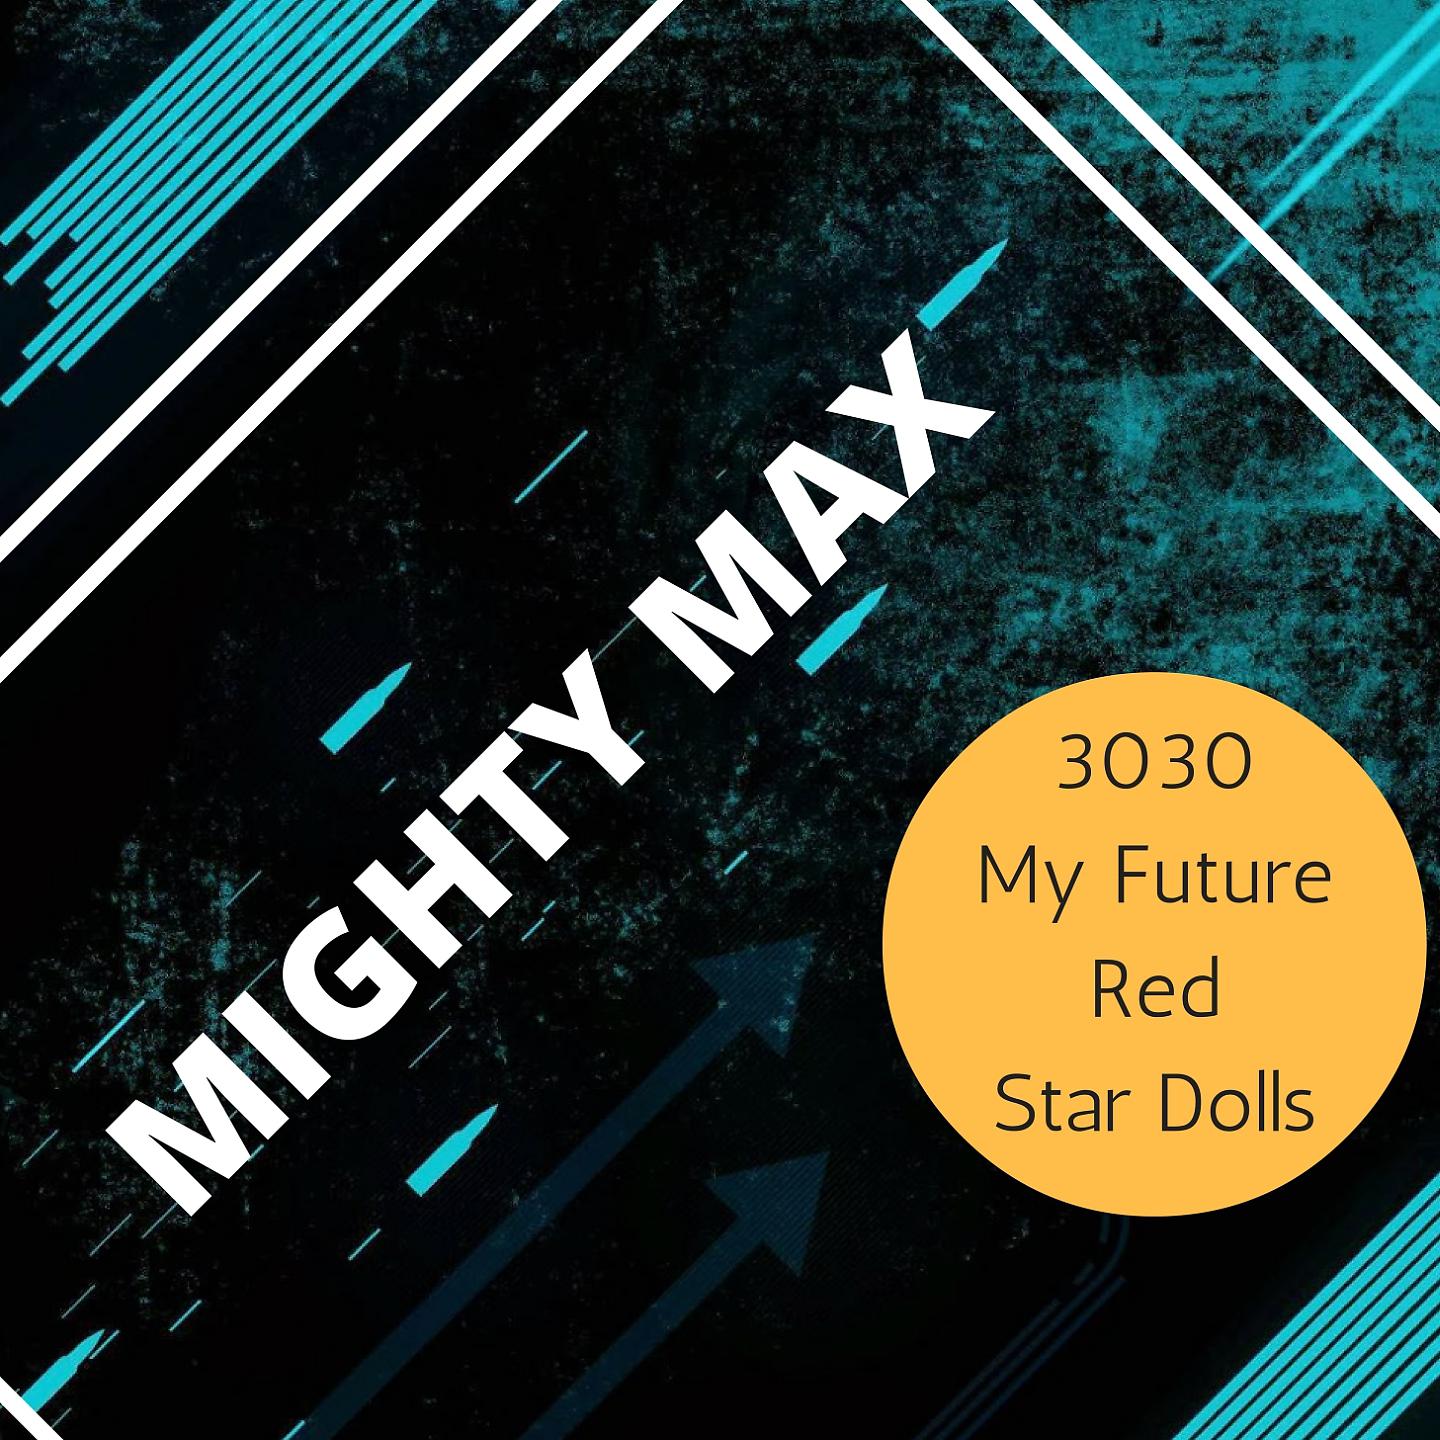 Постер альбома Mighty Max